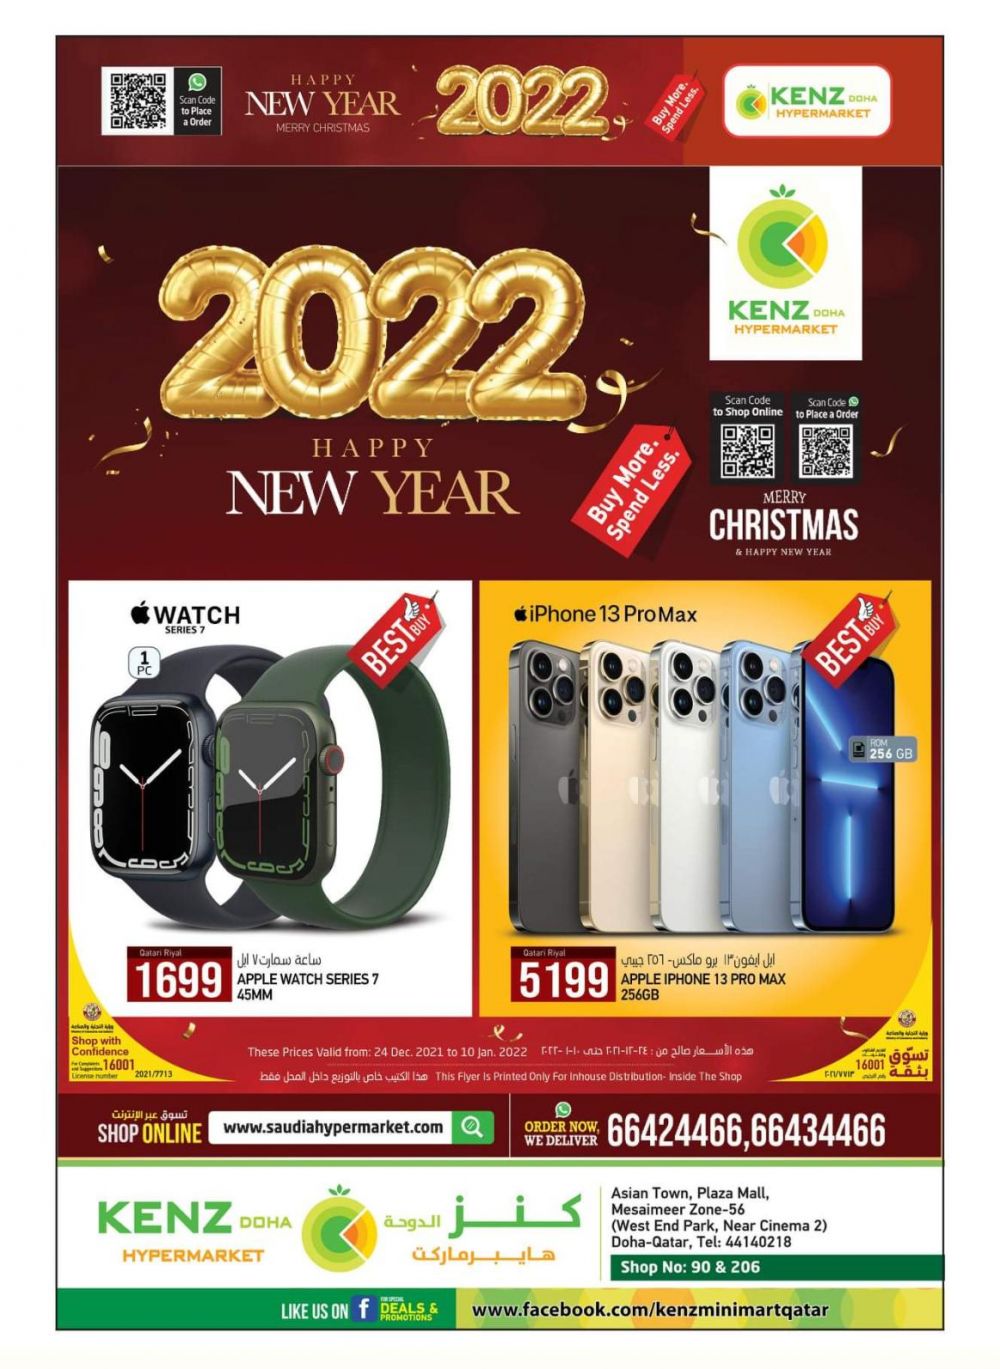 KENZ Mini Mart Qatar offers 2021